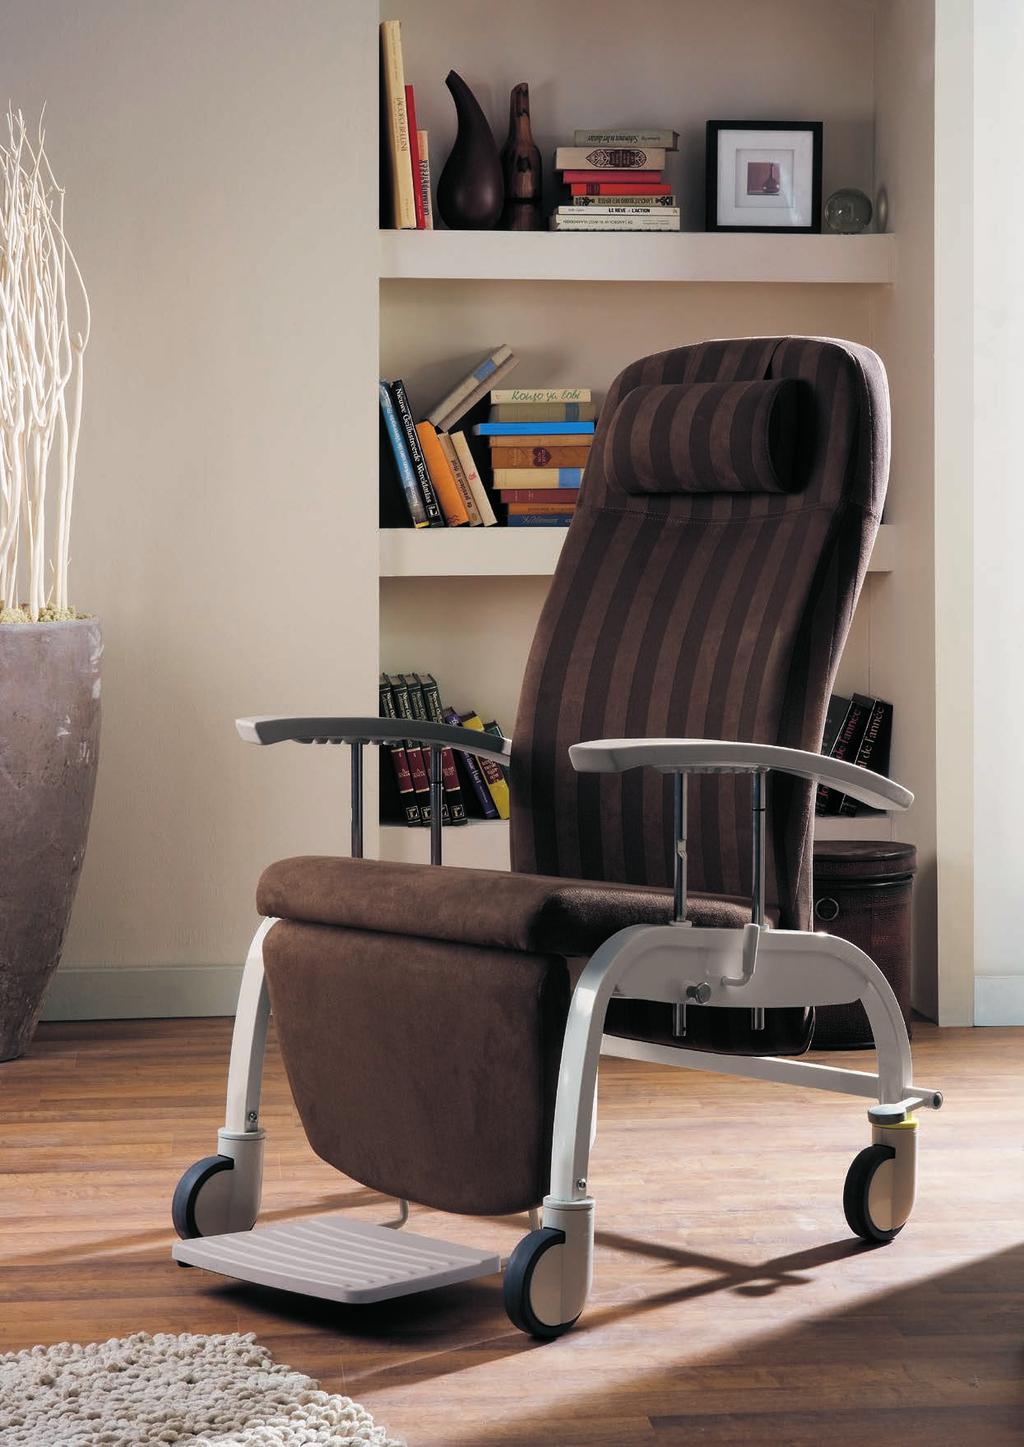 Ergo-line Tilt rest chair on castors ED3460 Tilt rest chair without castors ED3450